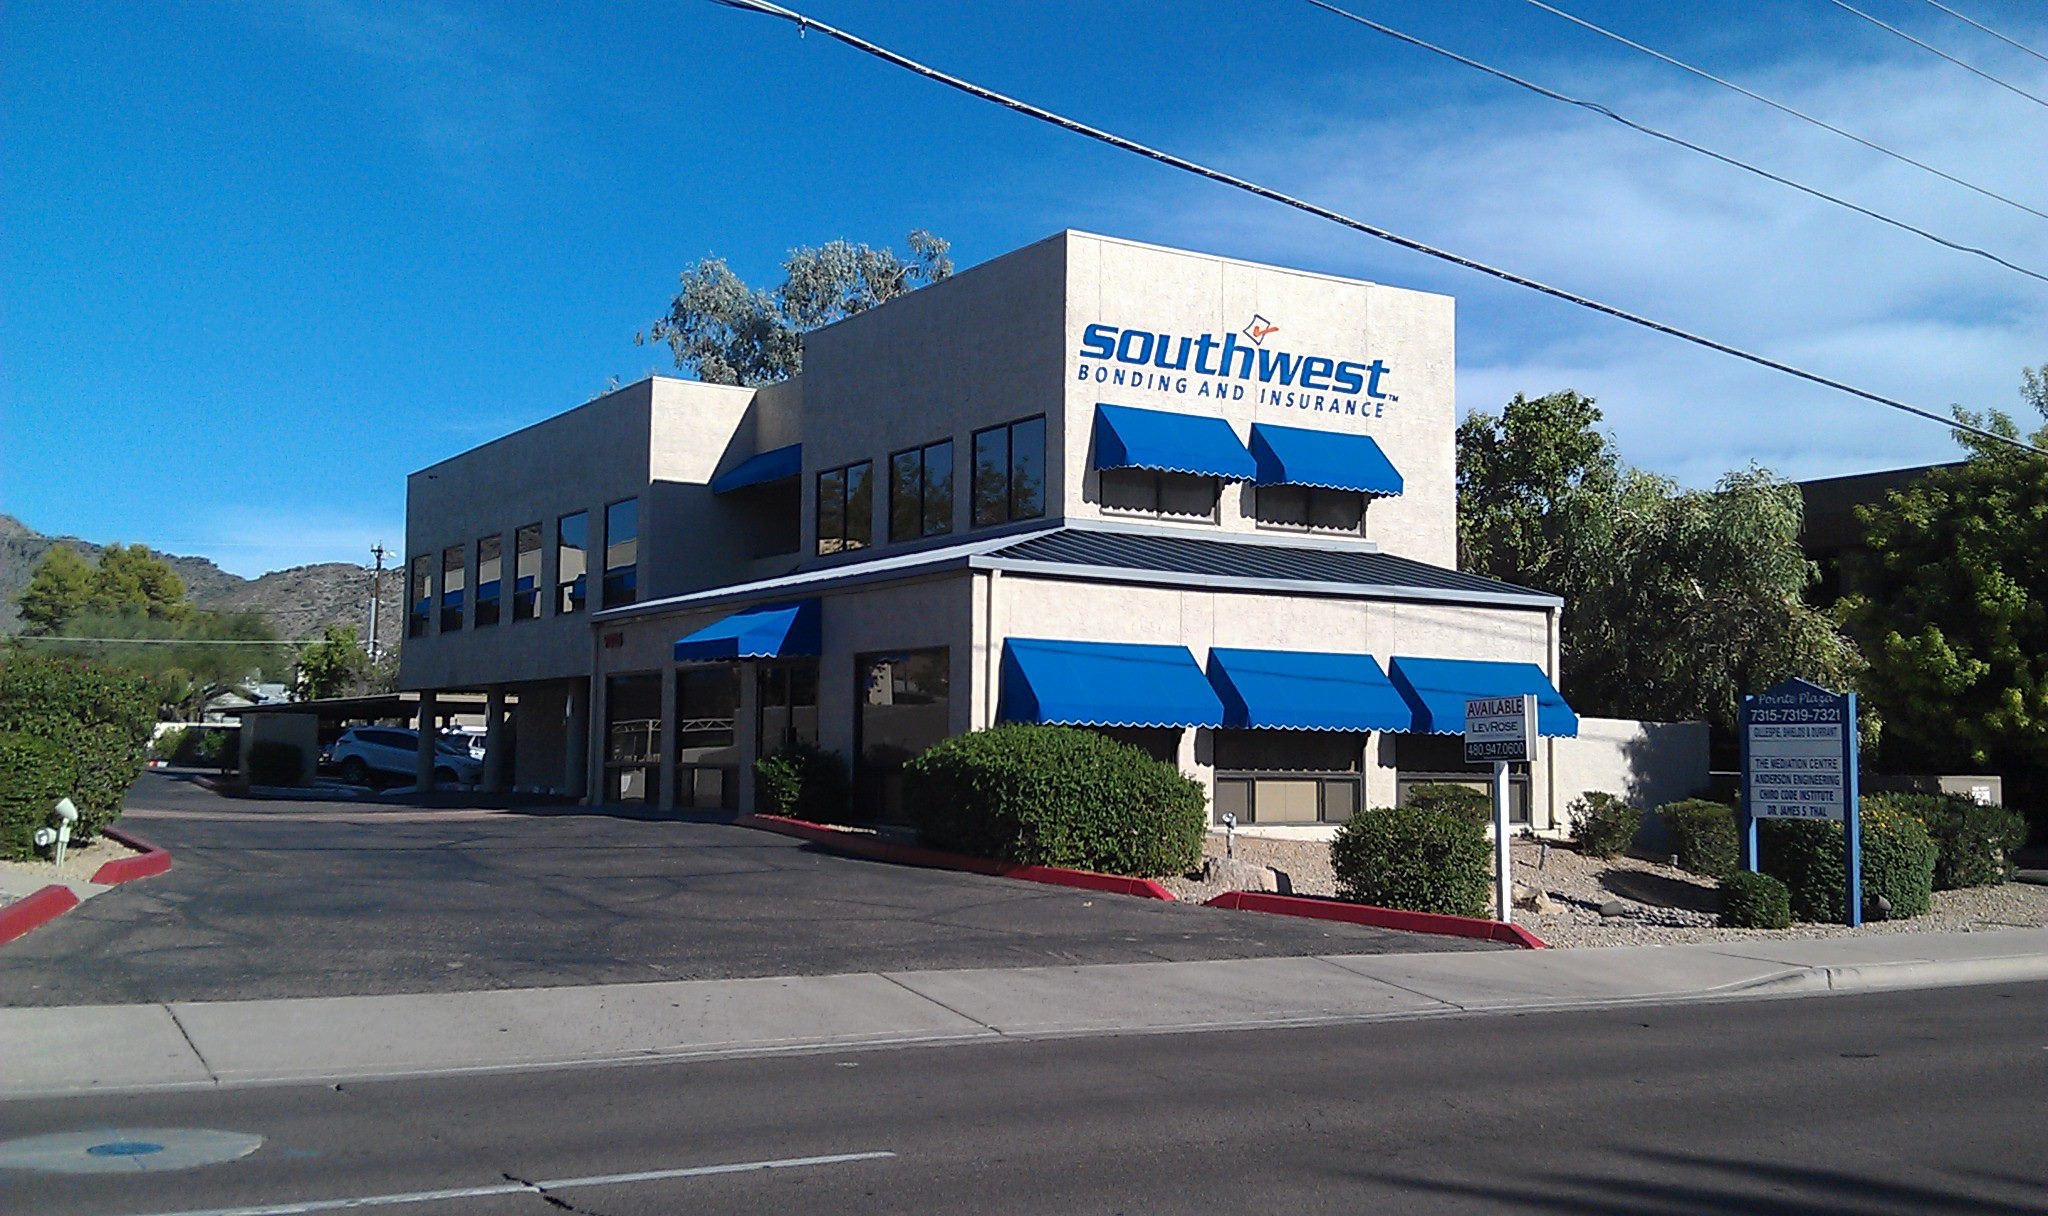 Southwest Bonding & Insurance Photo